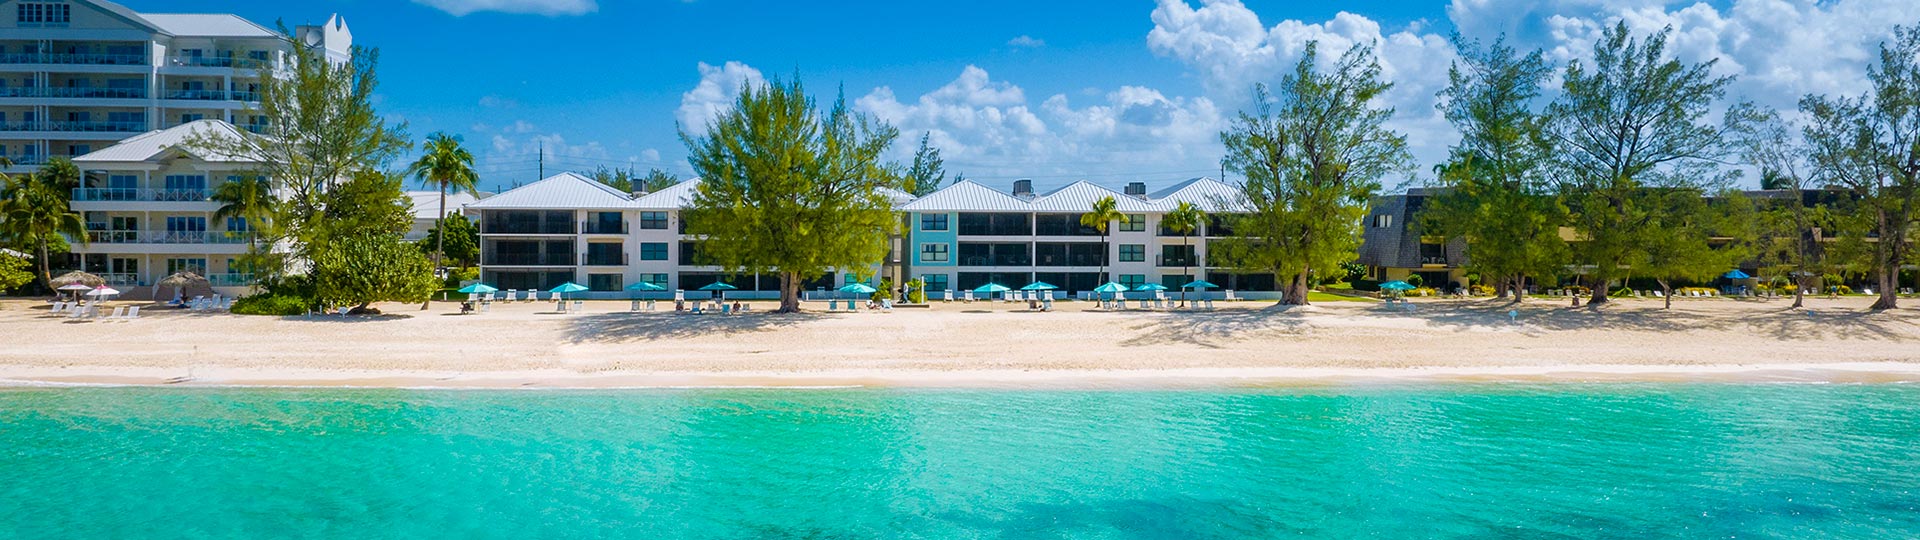 Casa Caribe Boutique Condo, located on Seven Mile Beach, Grand Cayman